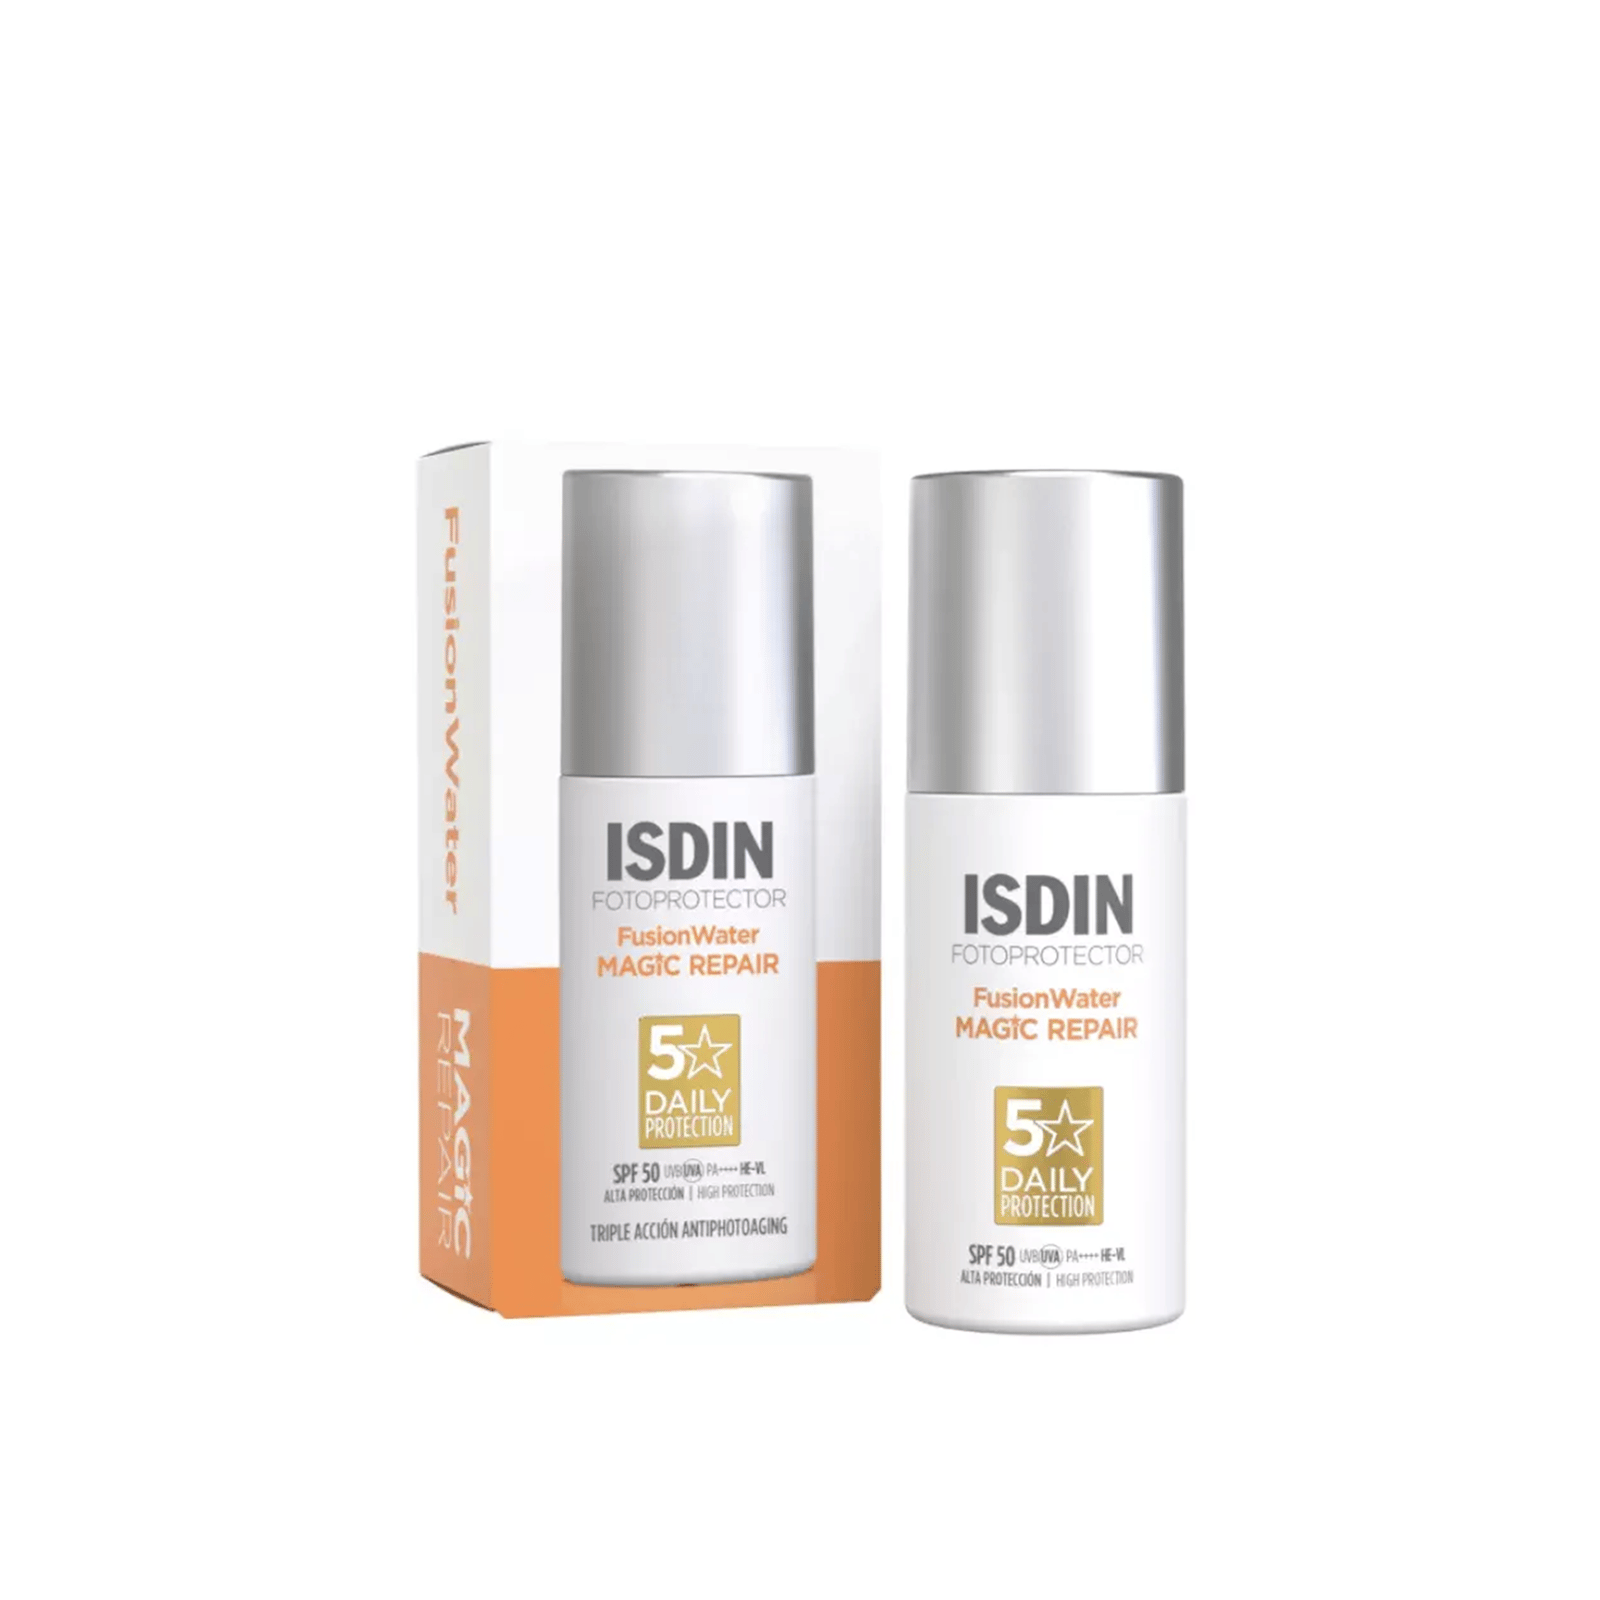 ISDIN Fotoprotector Fusion Water Magic Repair Sunscreen SPF50 50ml